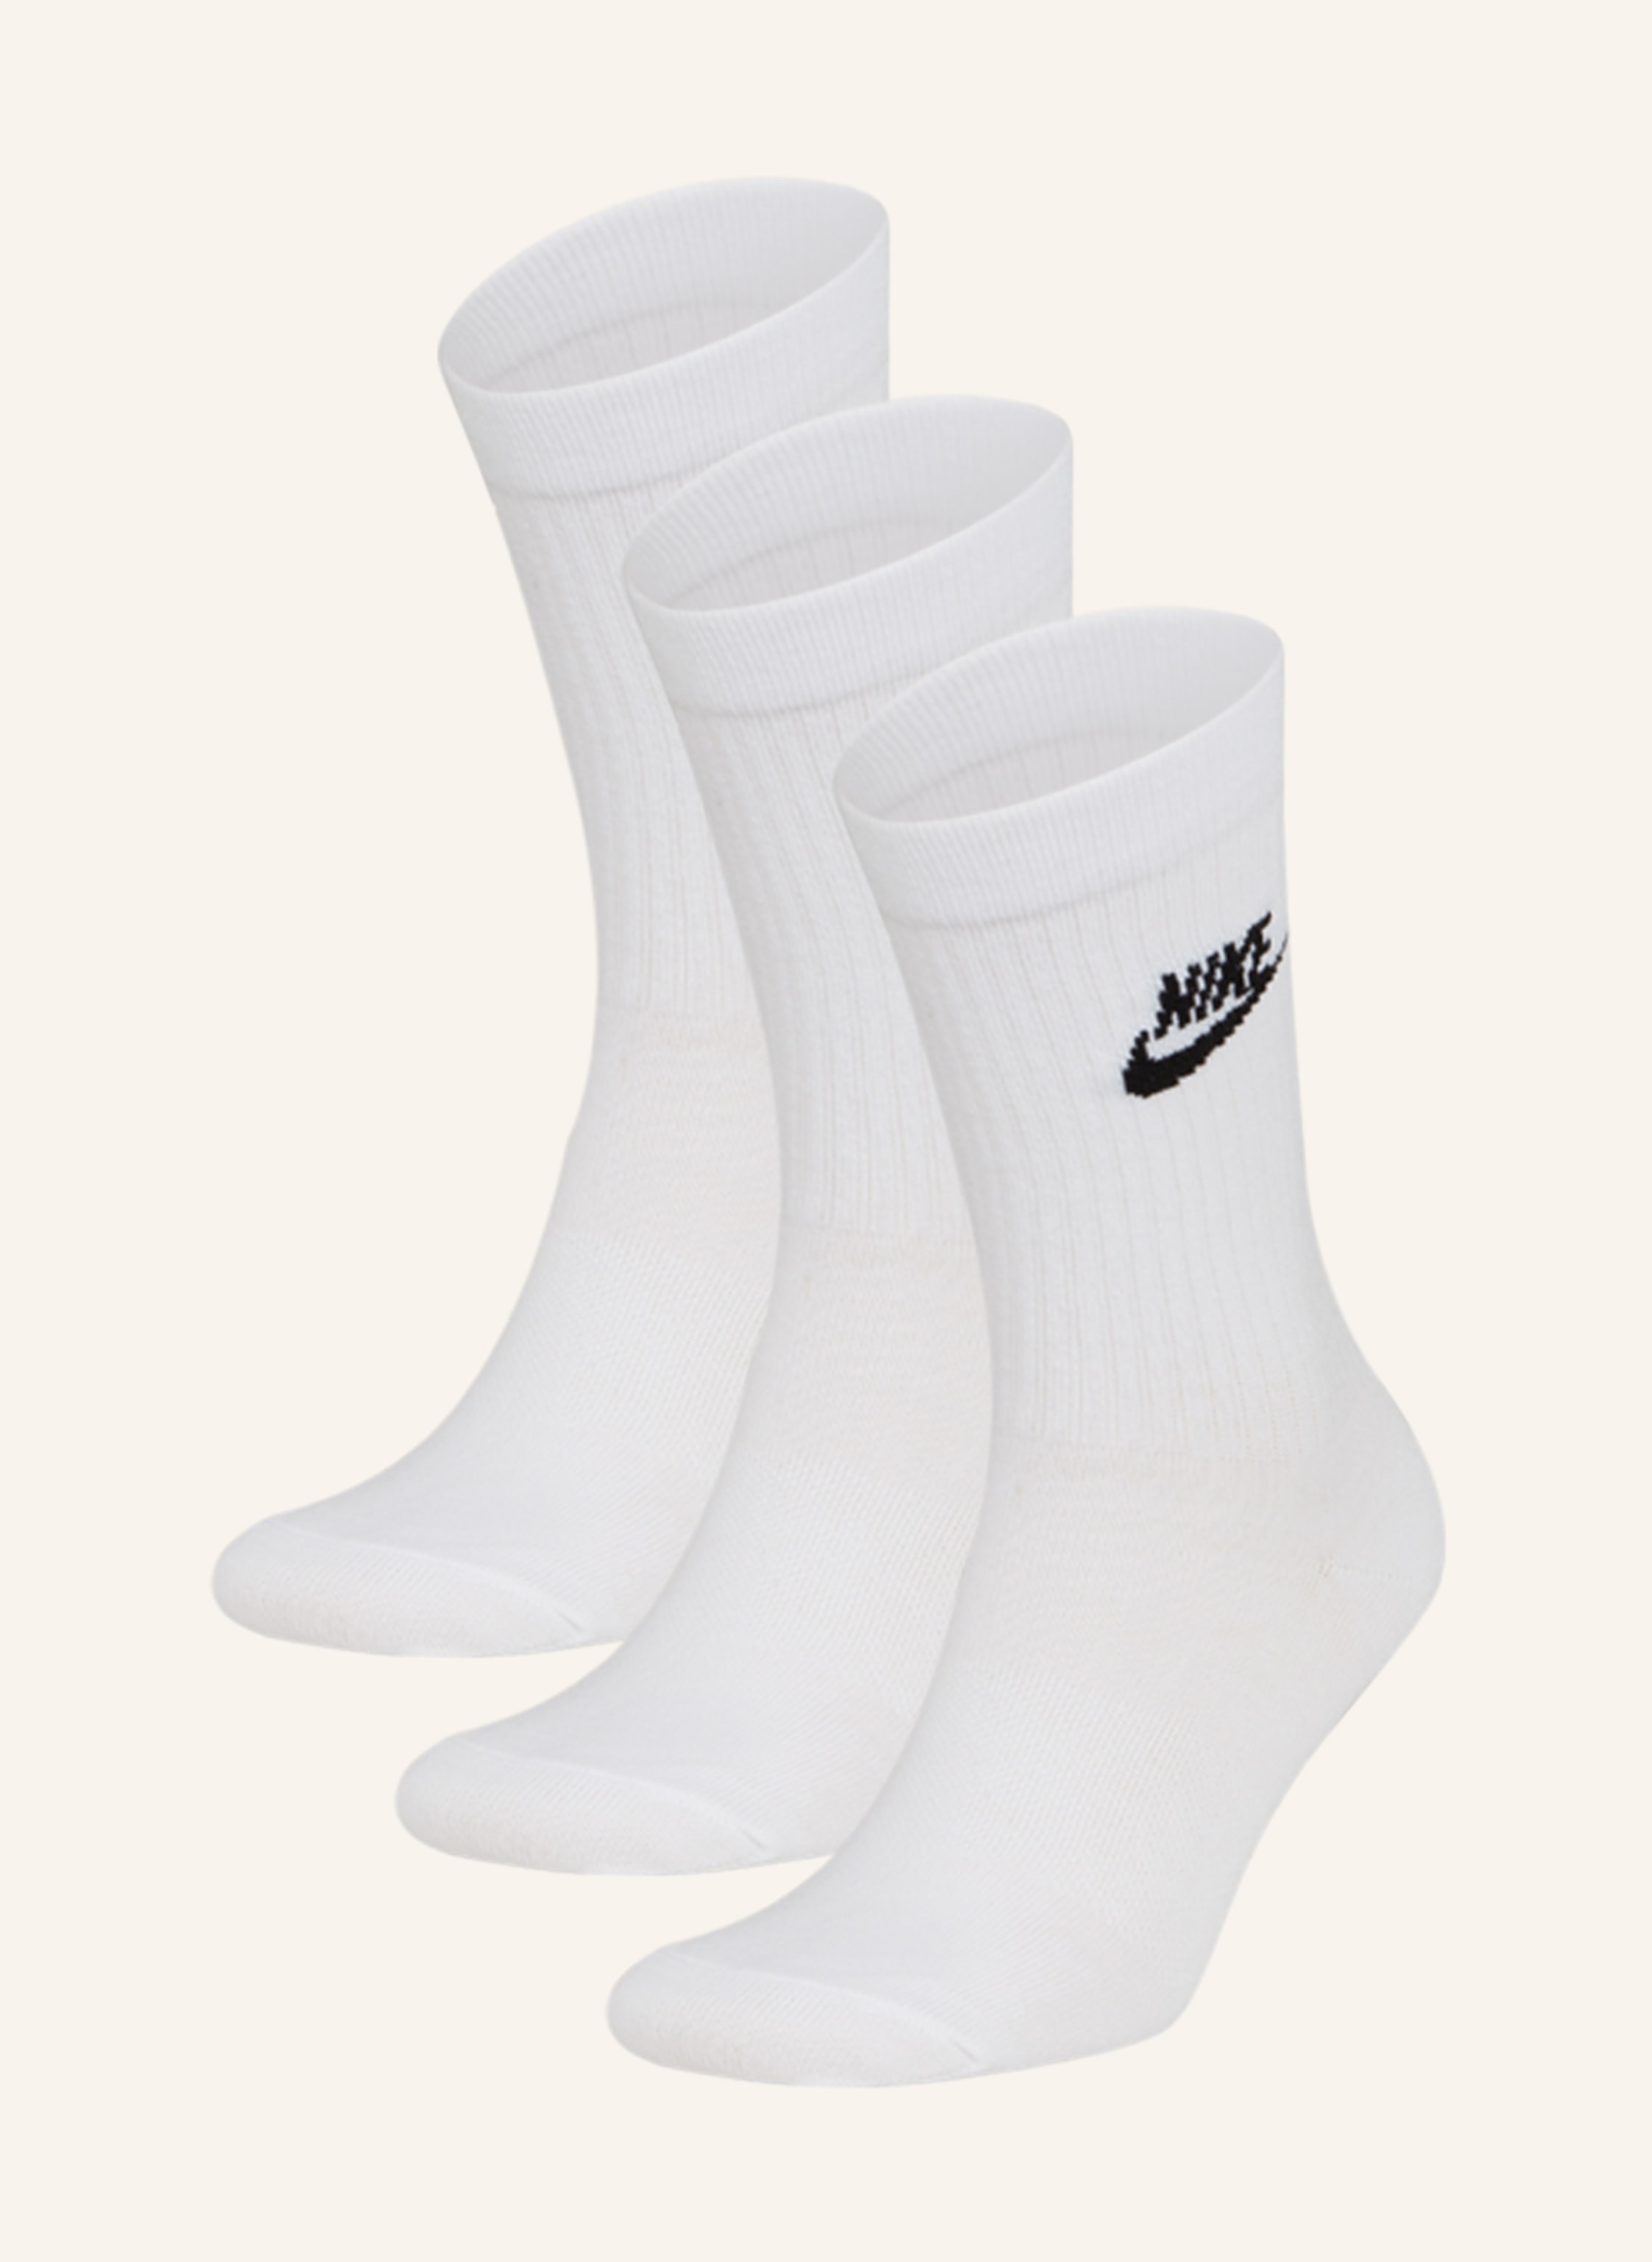 100 white/black Nike CREW Sportsocken EVERYDAY in ESSENTIAL 3er-Pack